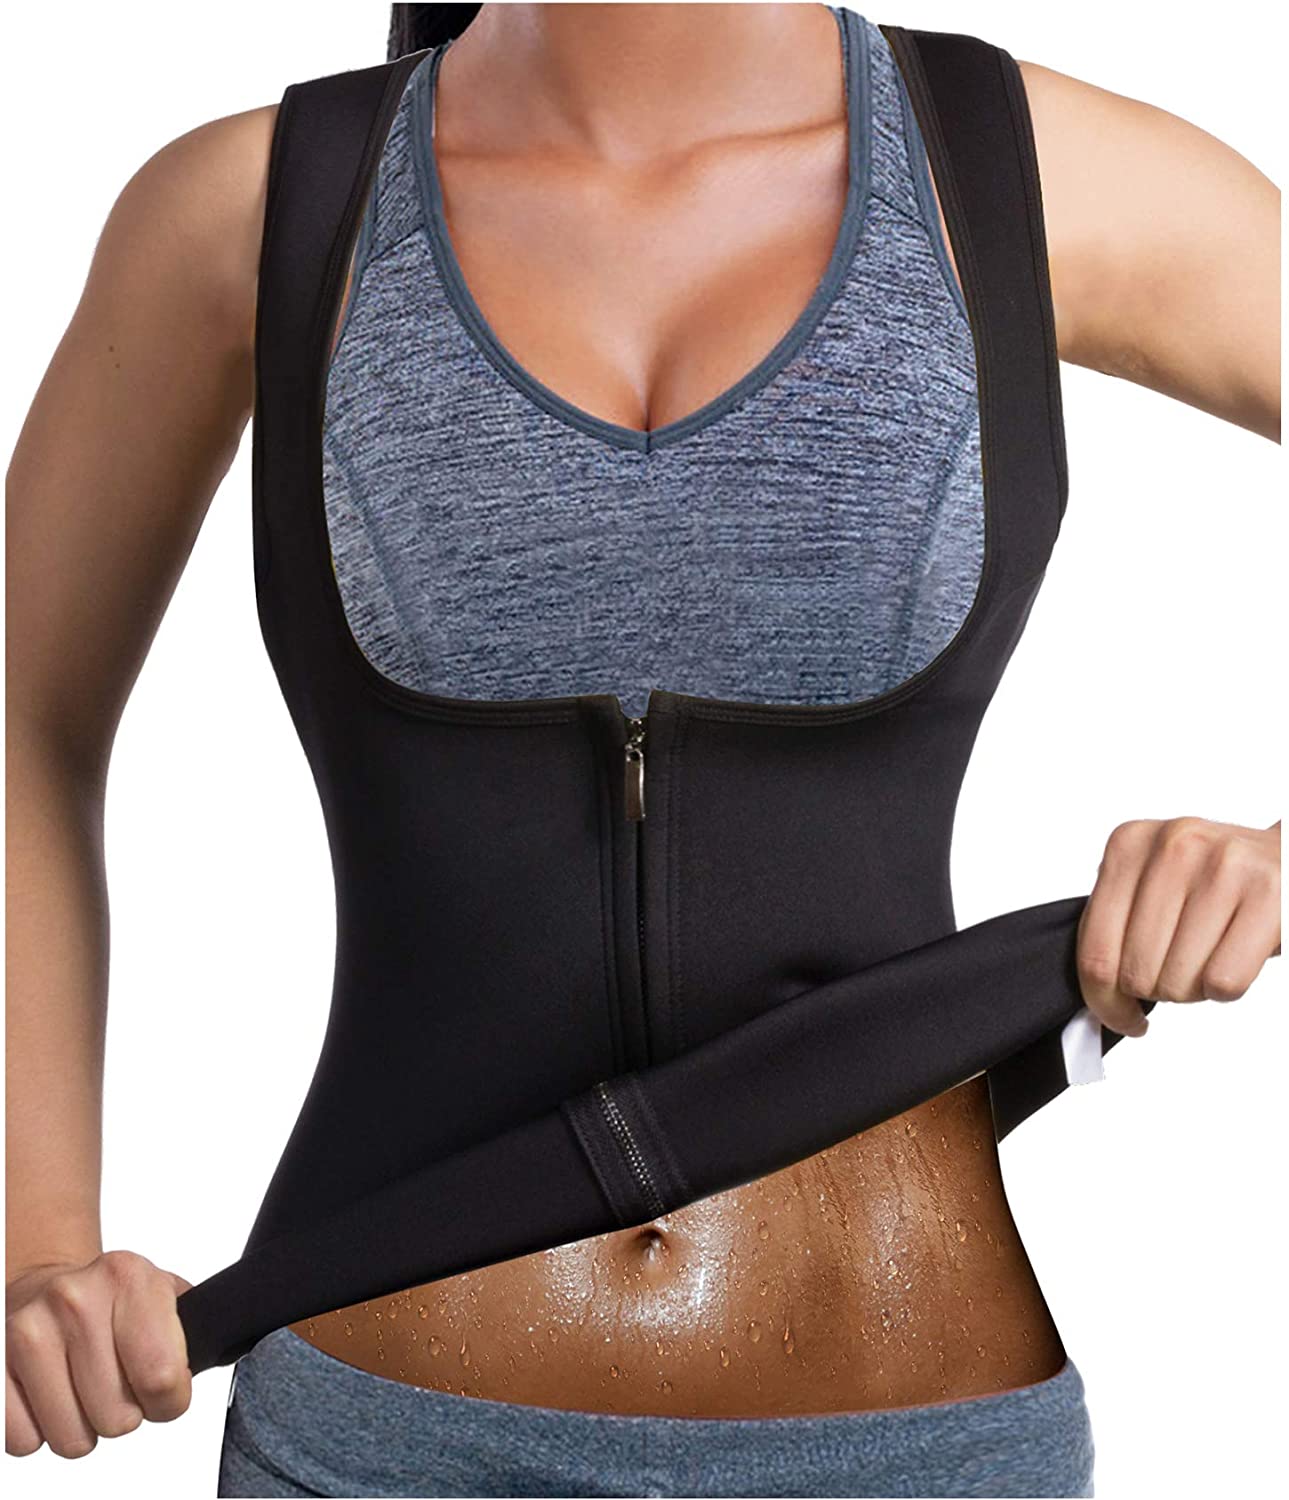 Sauna Women's Waist Trainer Corset Top (Shapes + Helps Weight Loss) - Buy  Online